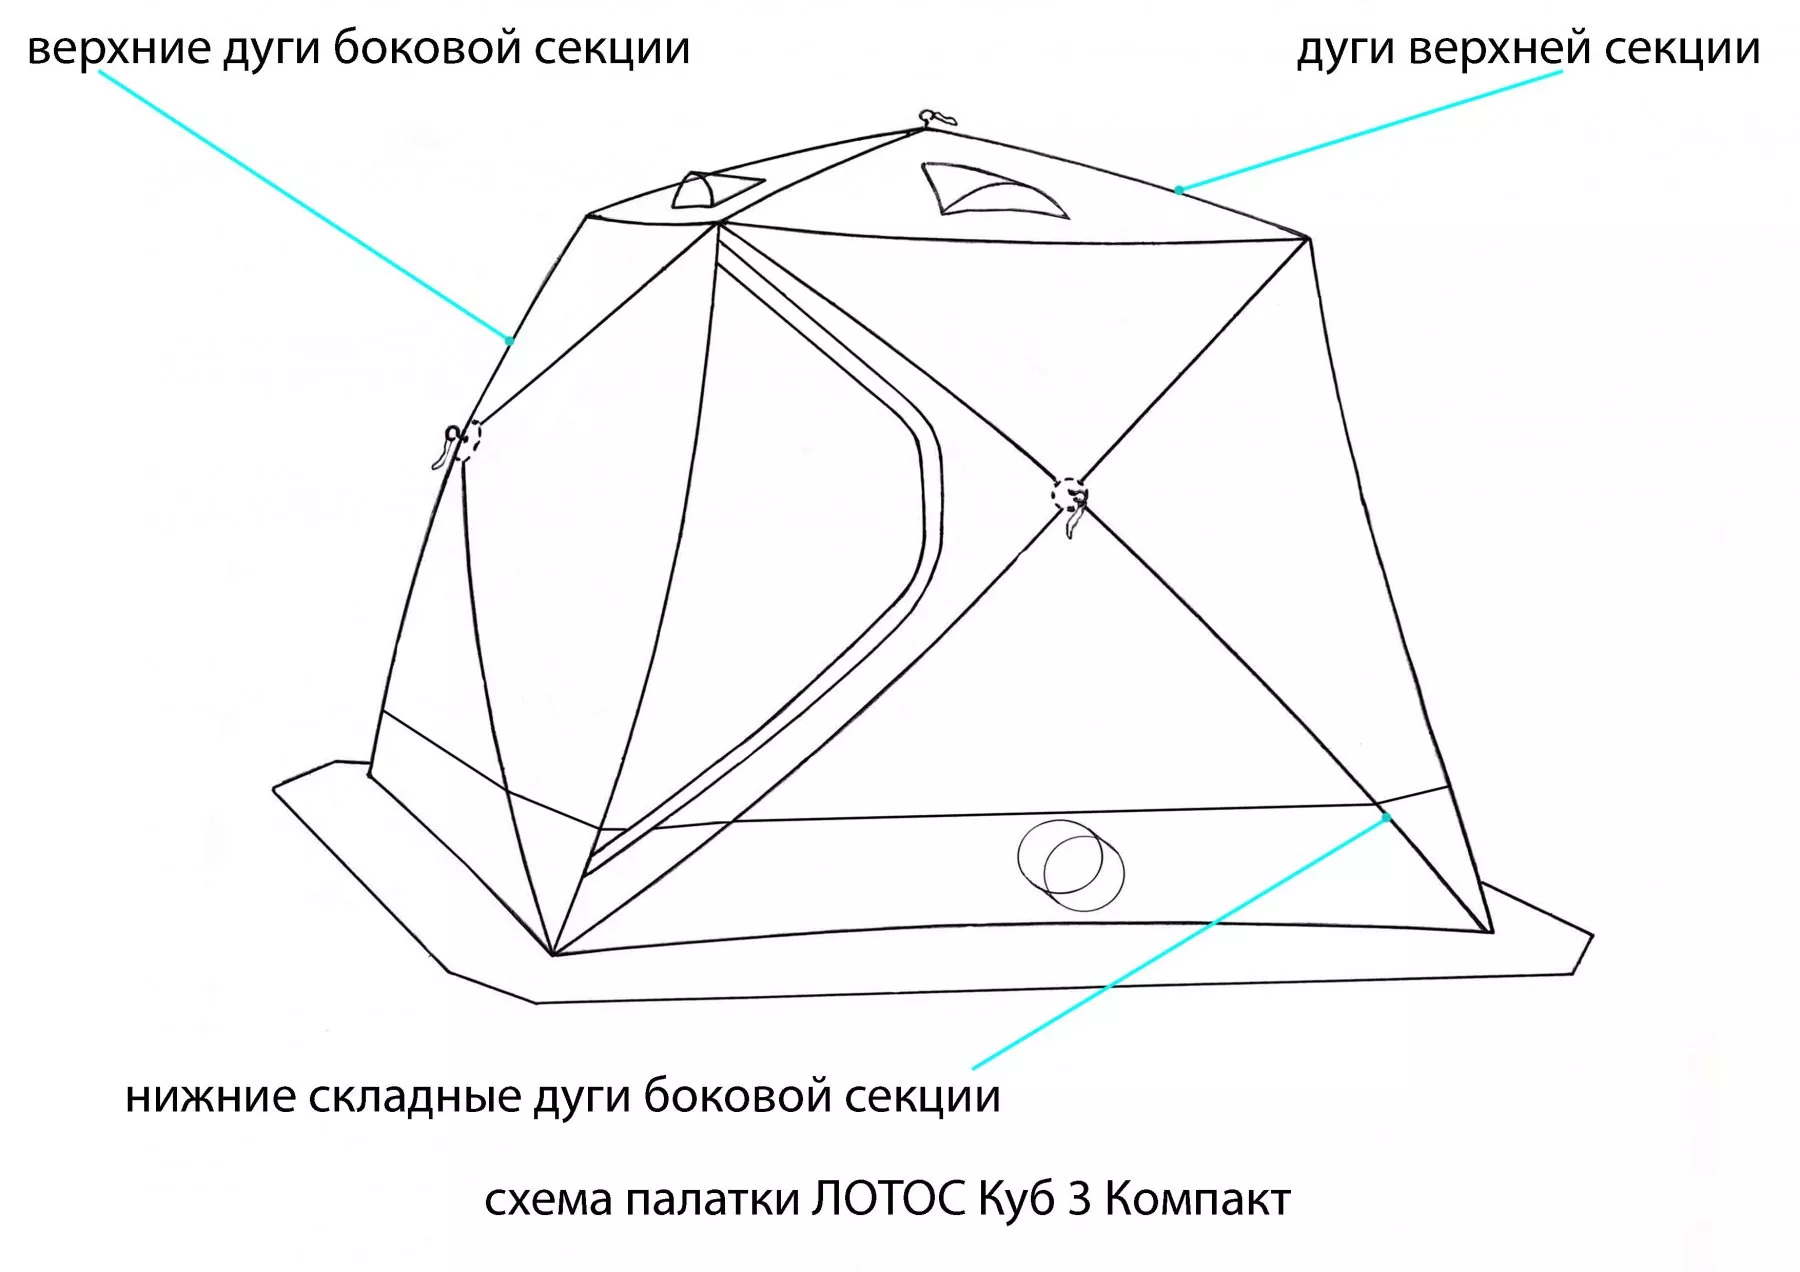 Схема палатки ЛОТОС Куб 3 Компакт